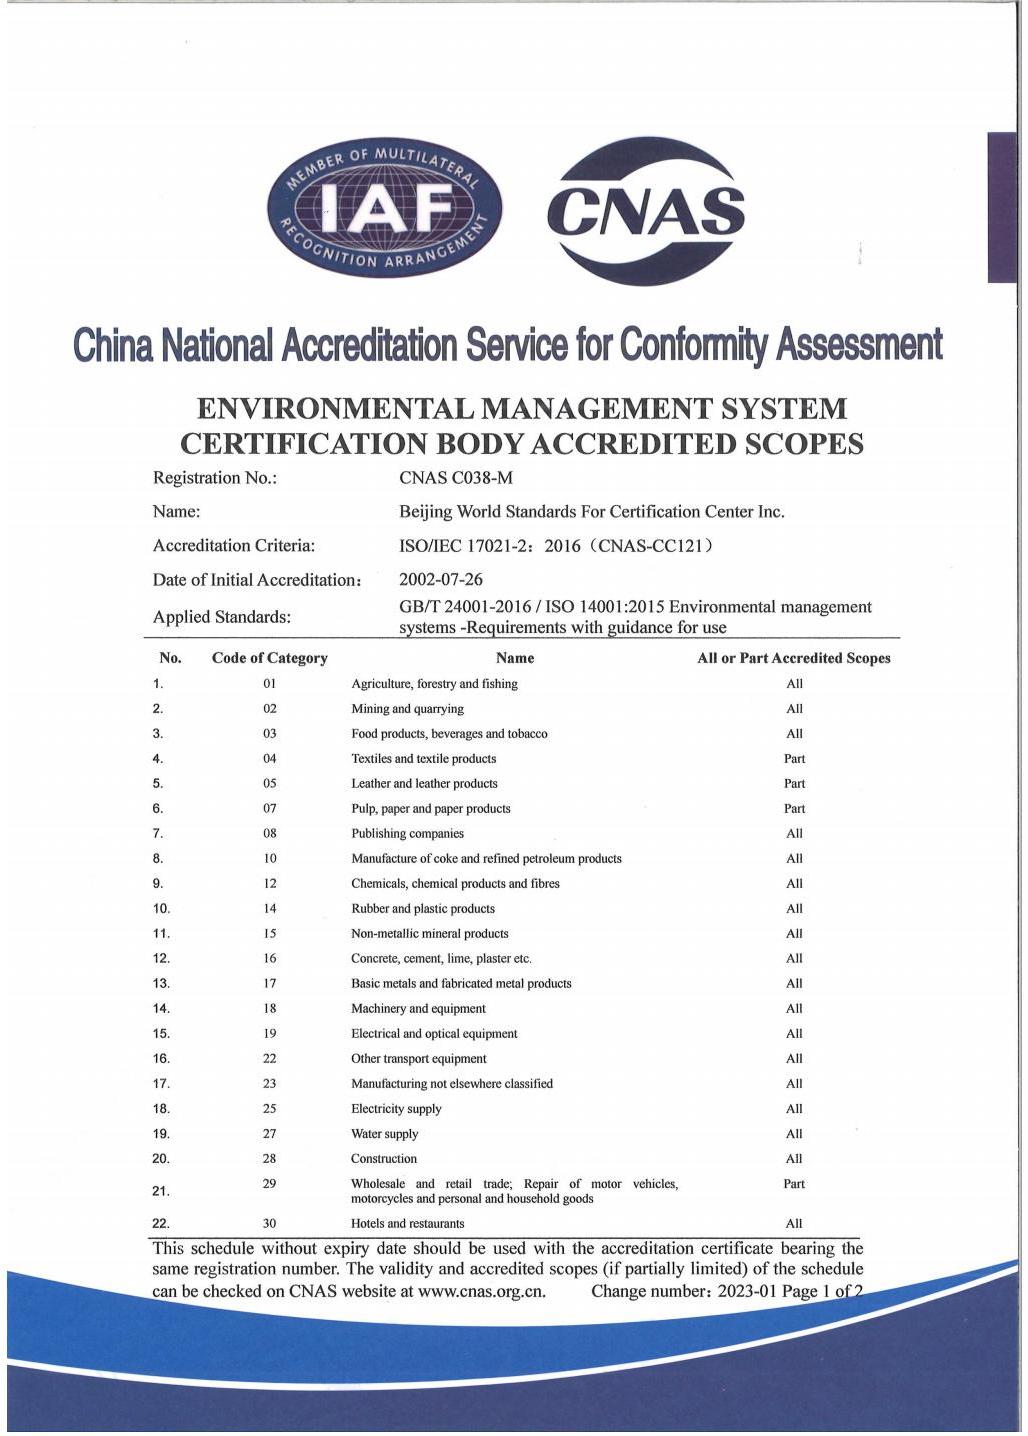 环境管理体系认证机构认可业务范围-中英文_02.jpg